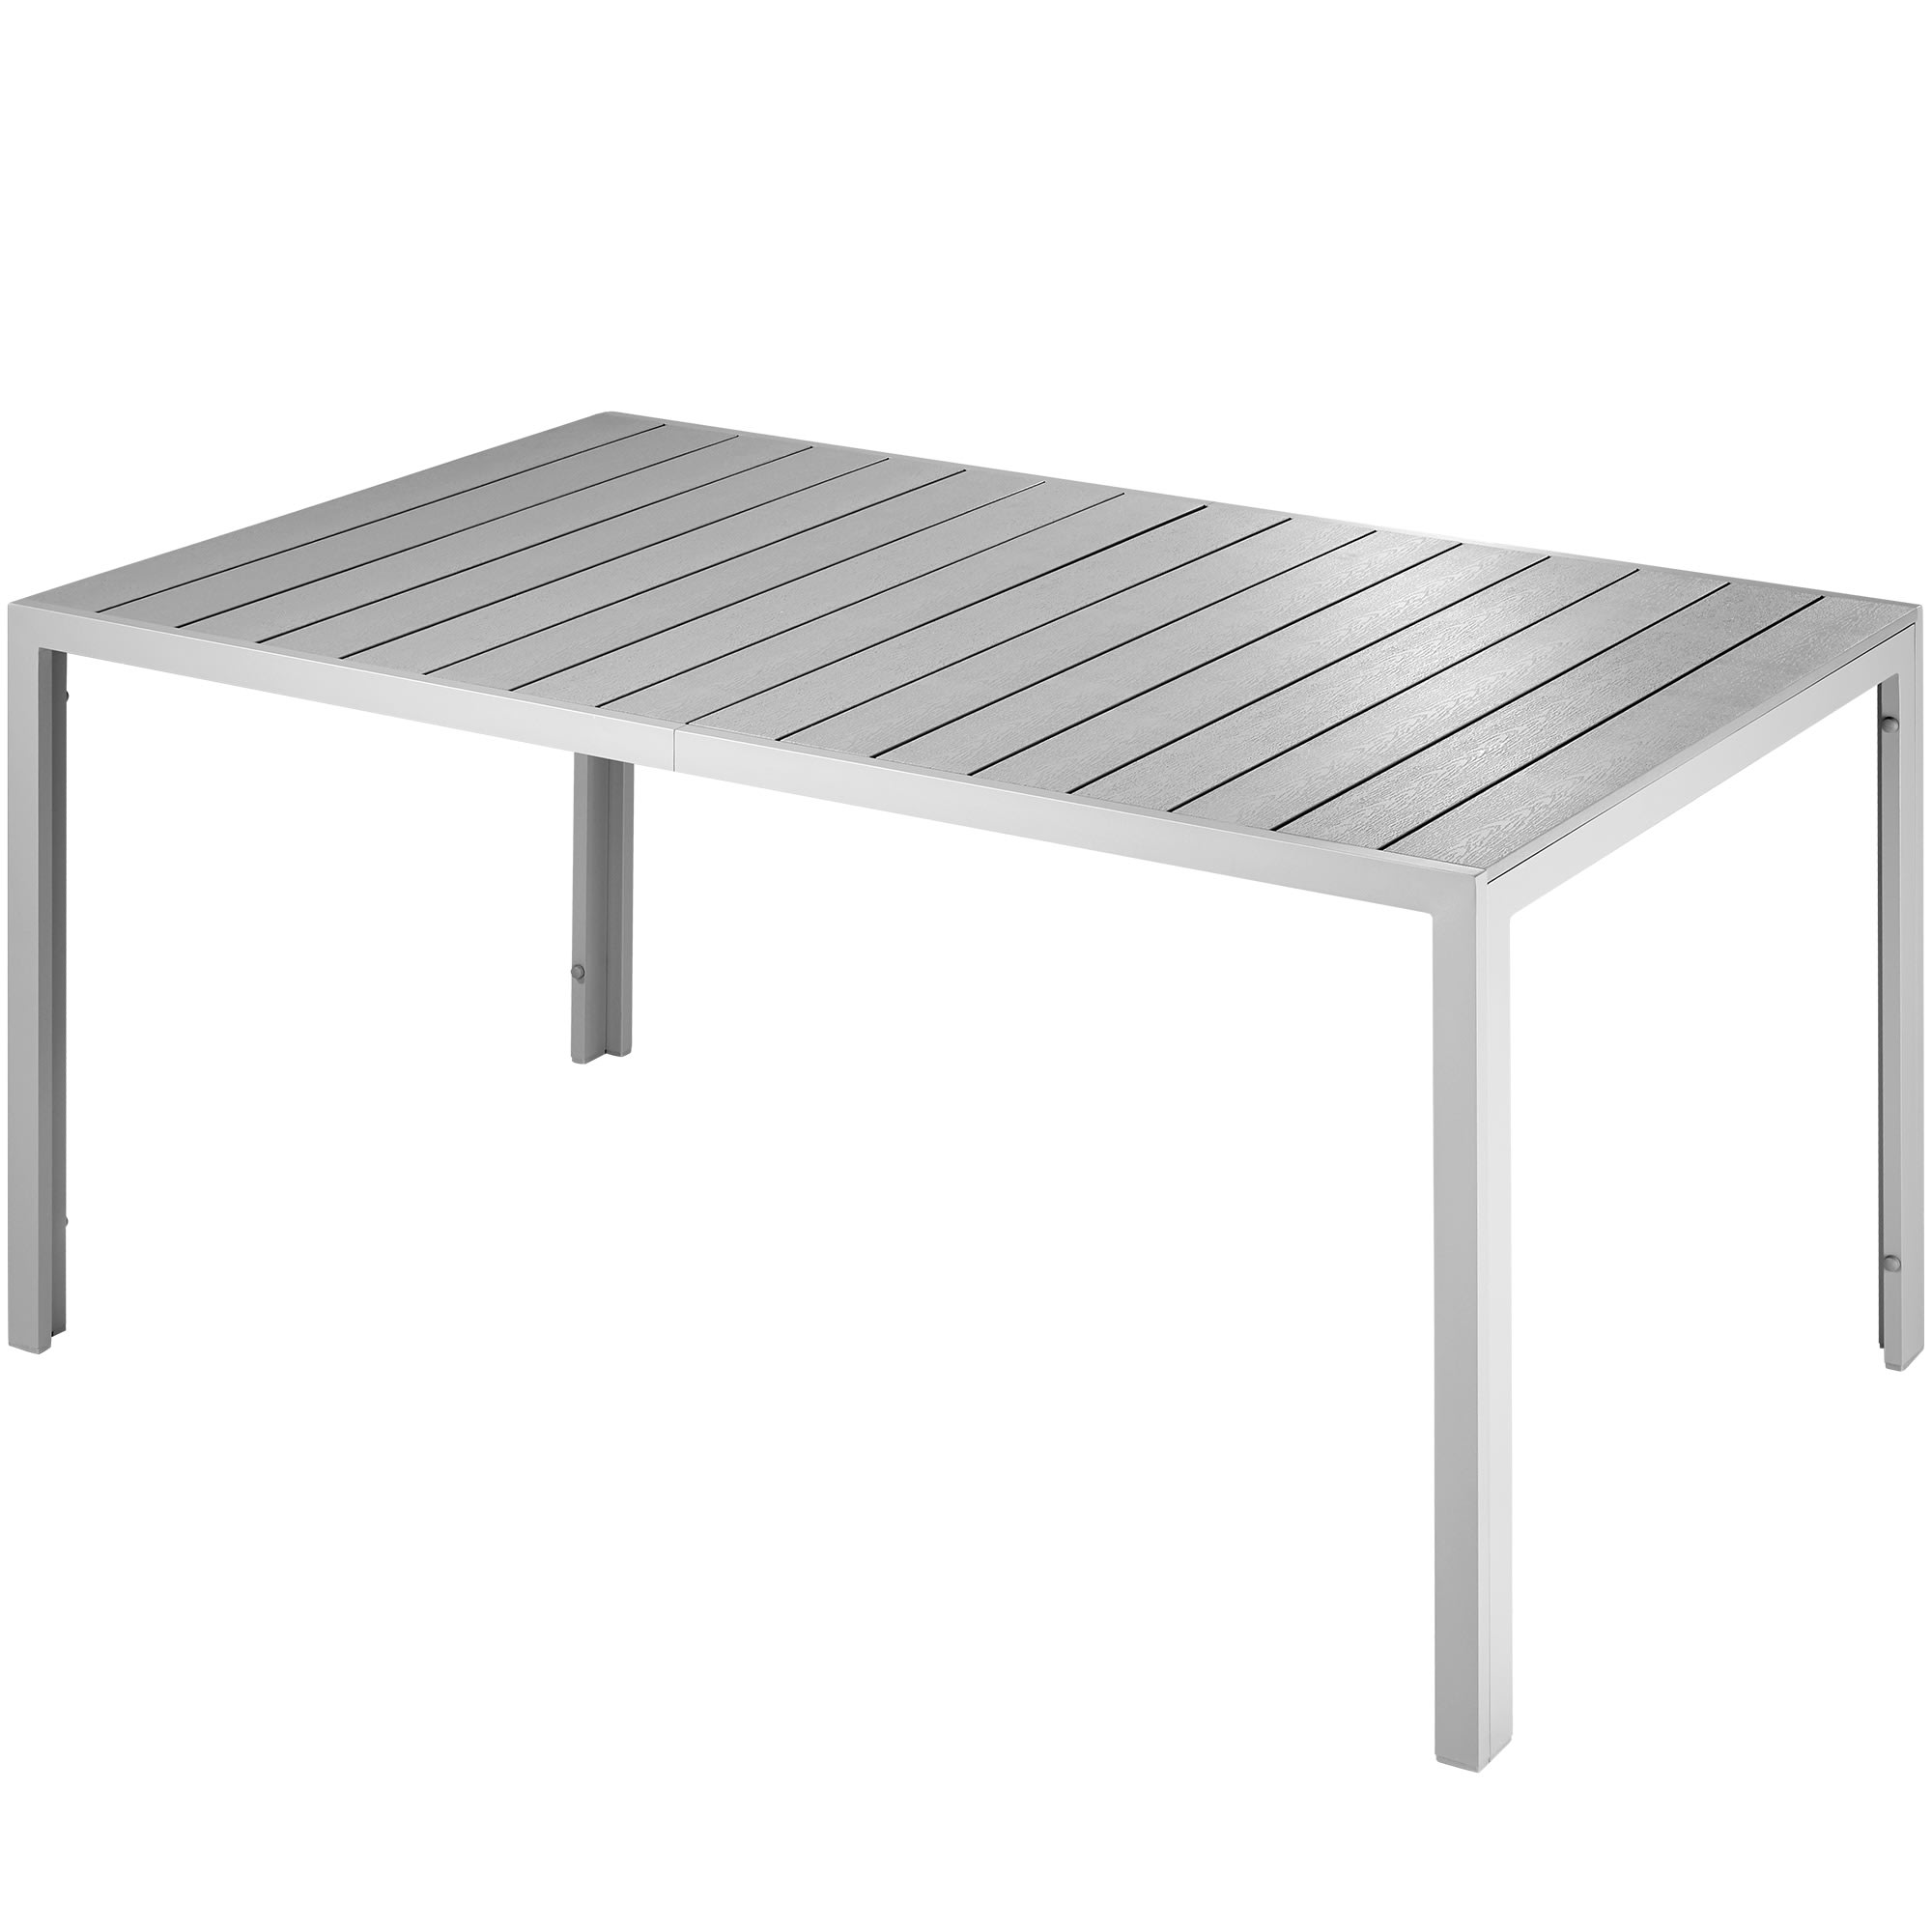 Pack de 4 patas plegables Click en aluminio para mesa